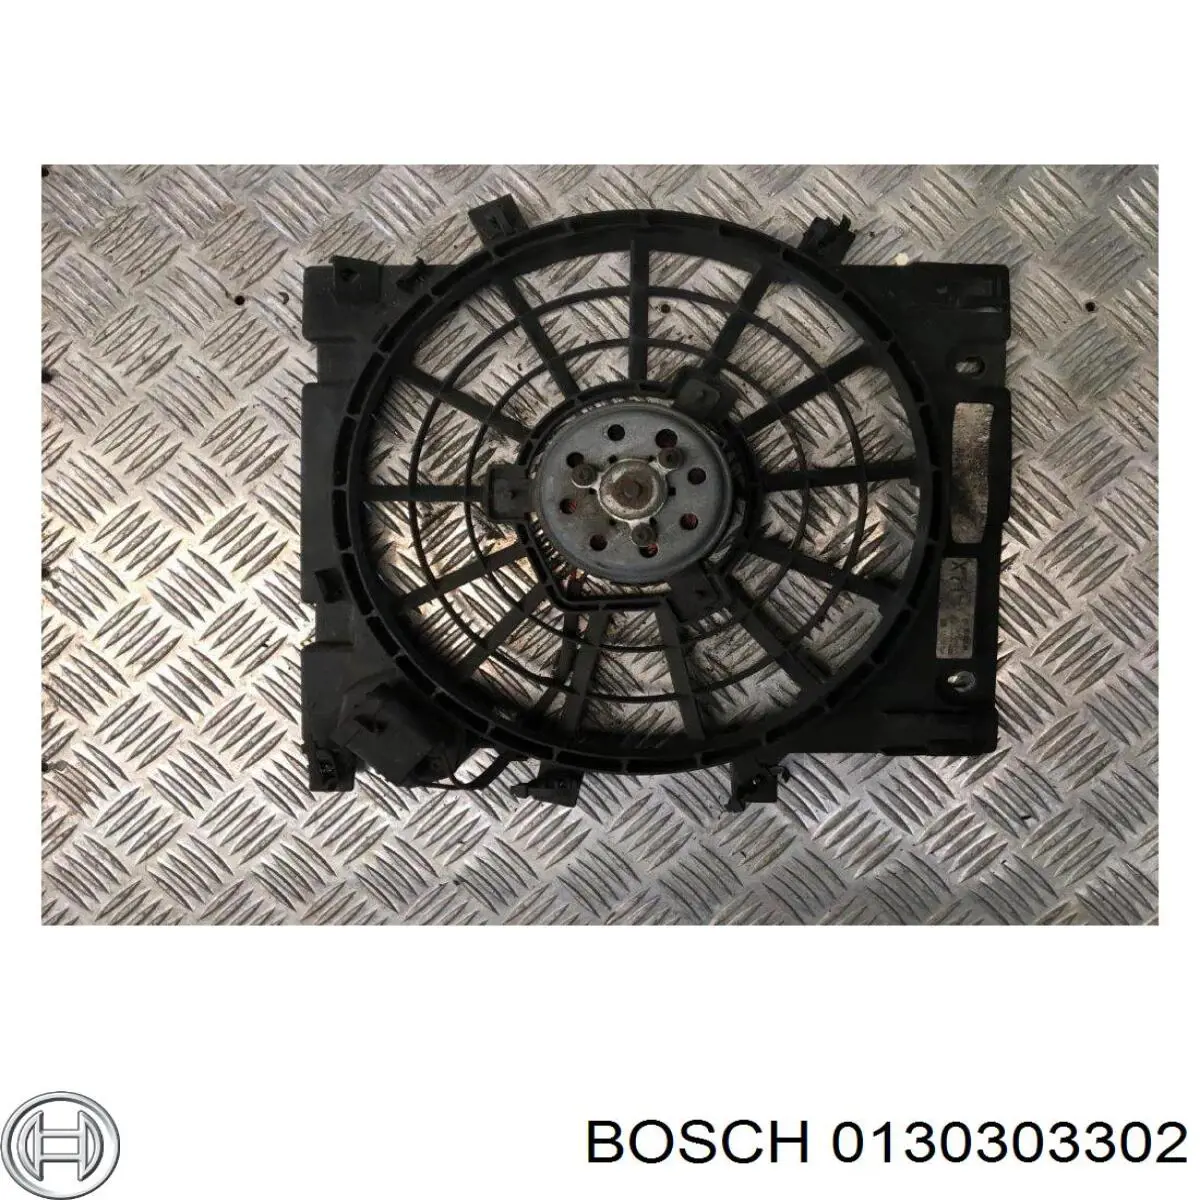 0130303302 Bosch электровентилятор охлаждения в сборе (мотор+крыльчатка)